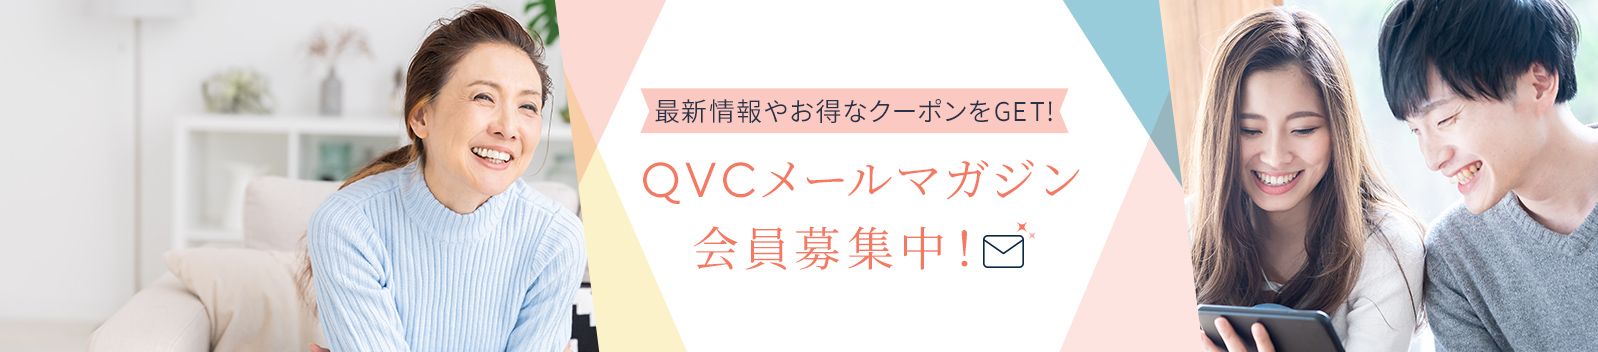 ジャパン 表 qvc 番組